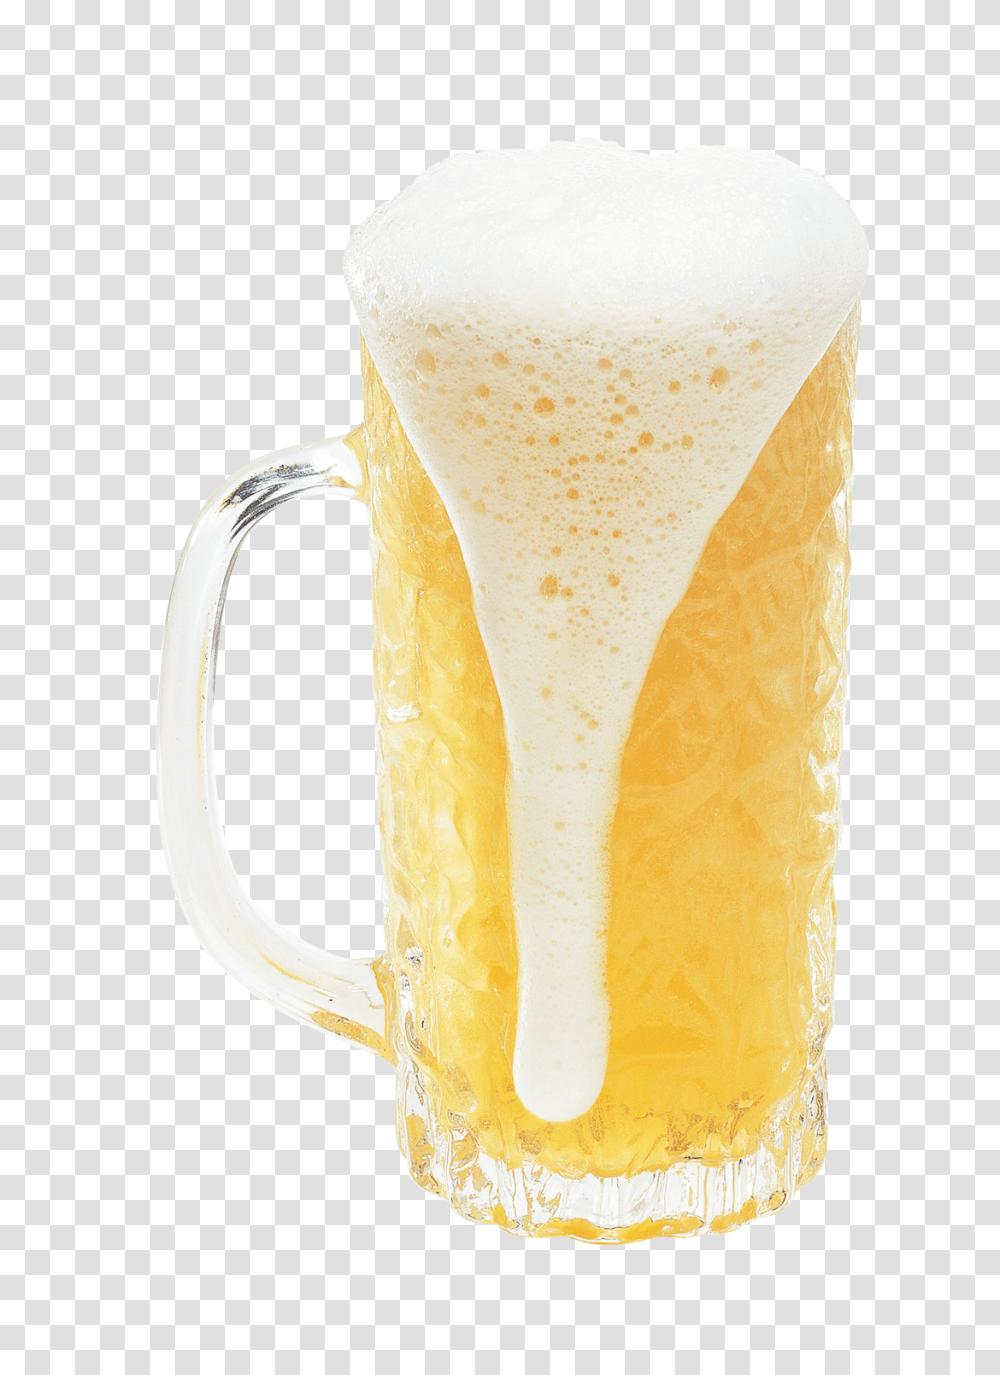 Mug Of Beer Image, Drink, Glass, Beer Glass, Alcohol Transparent Png